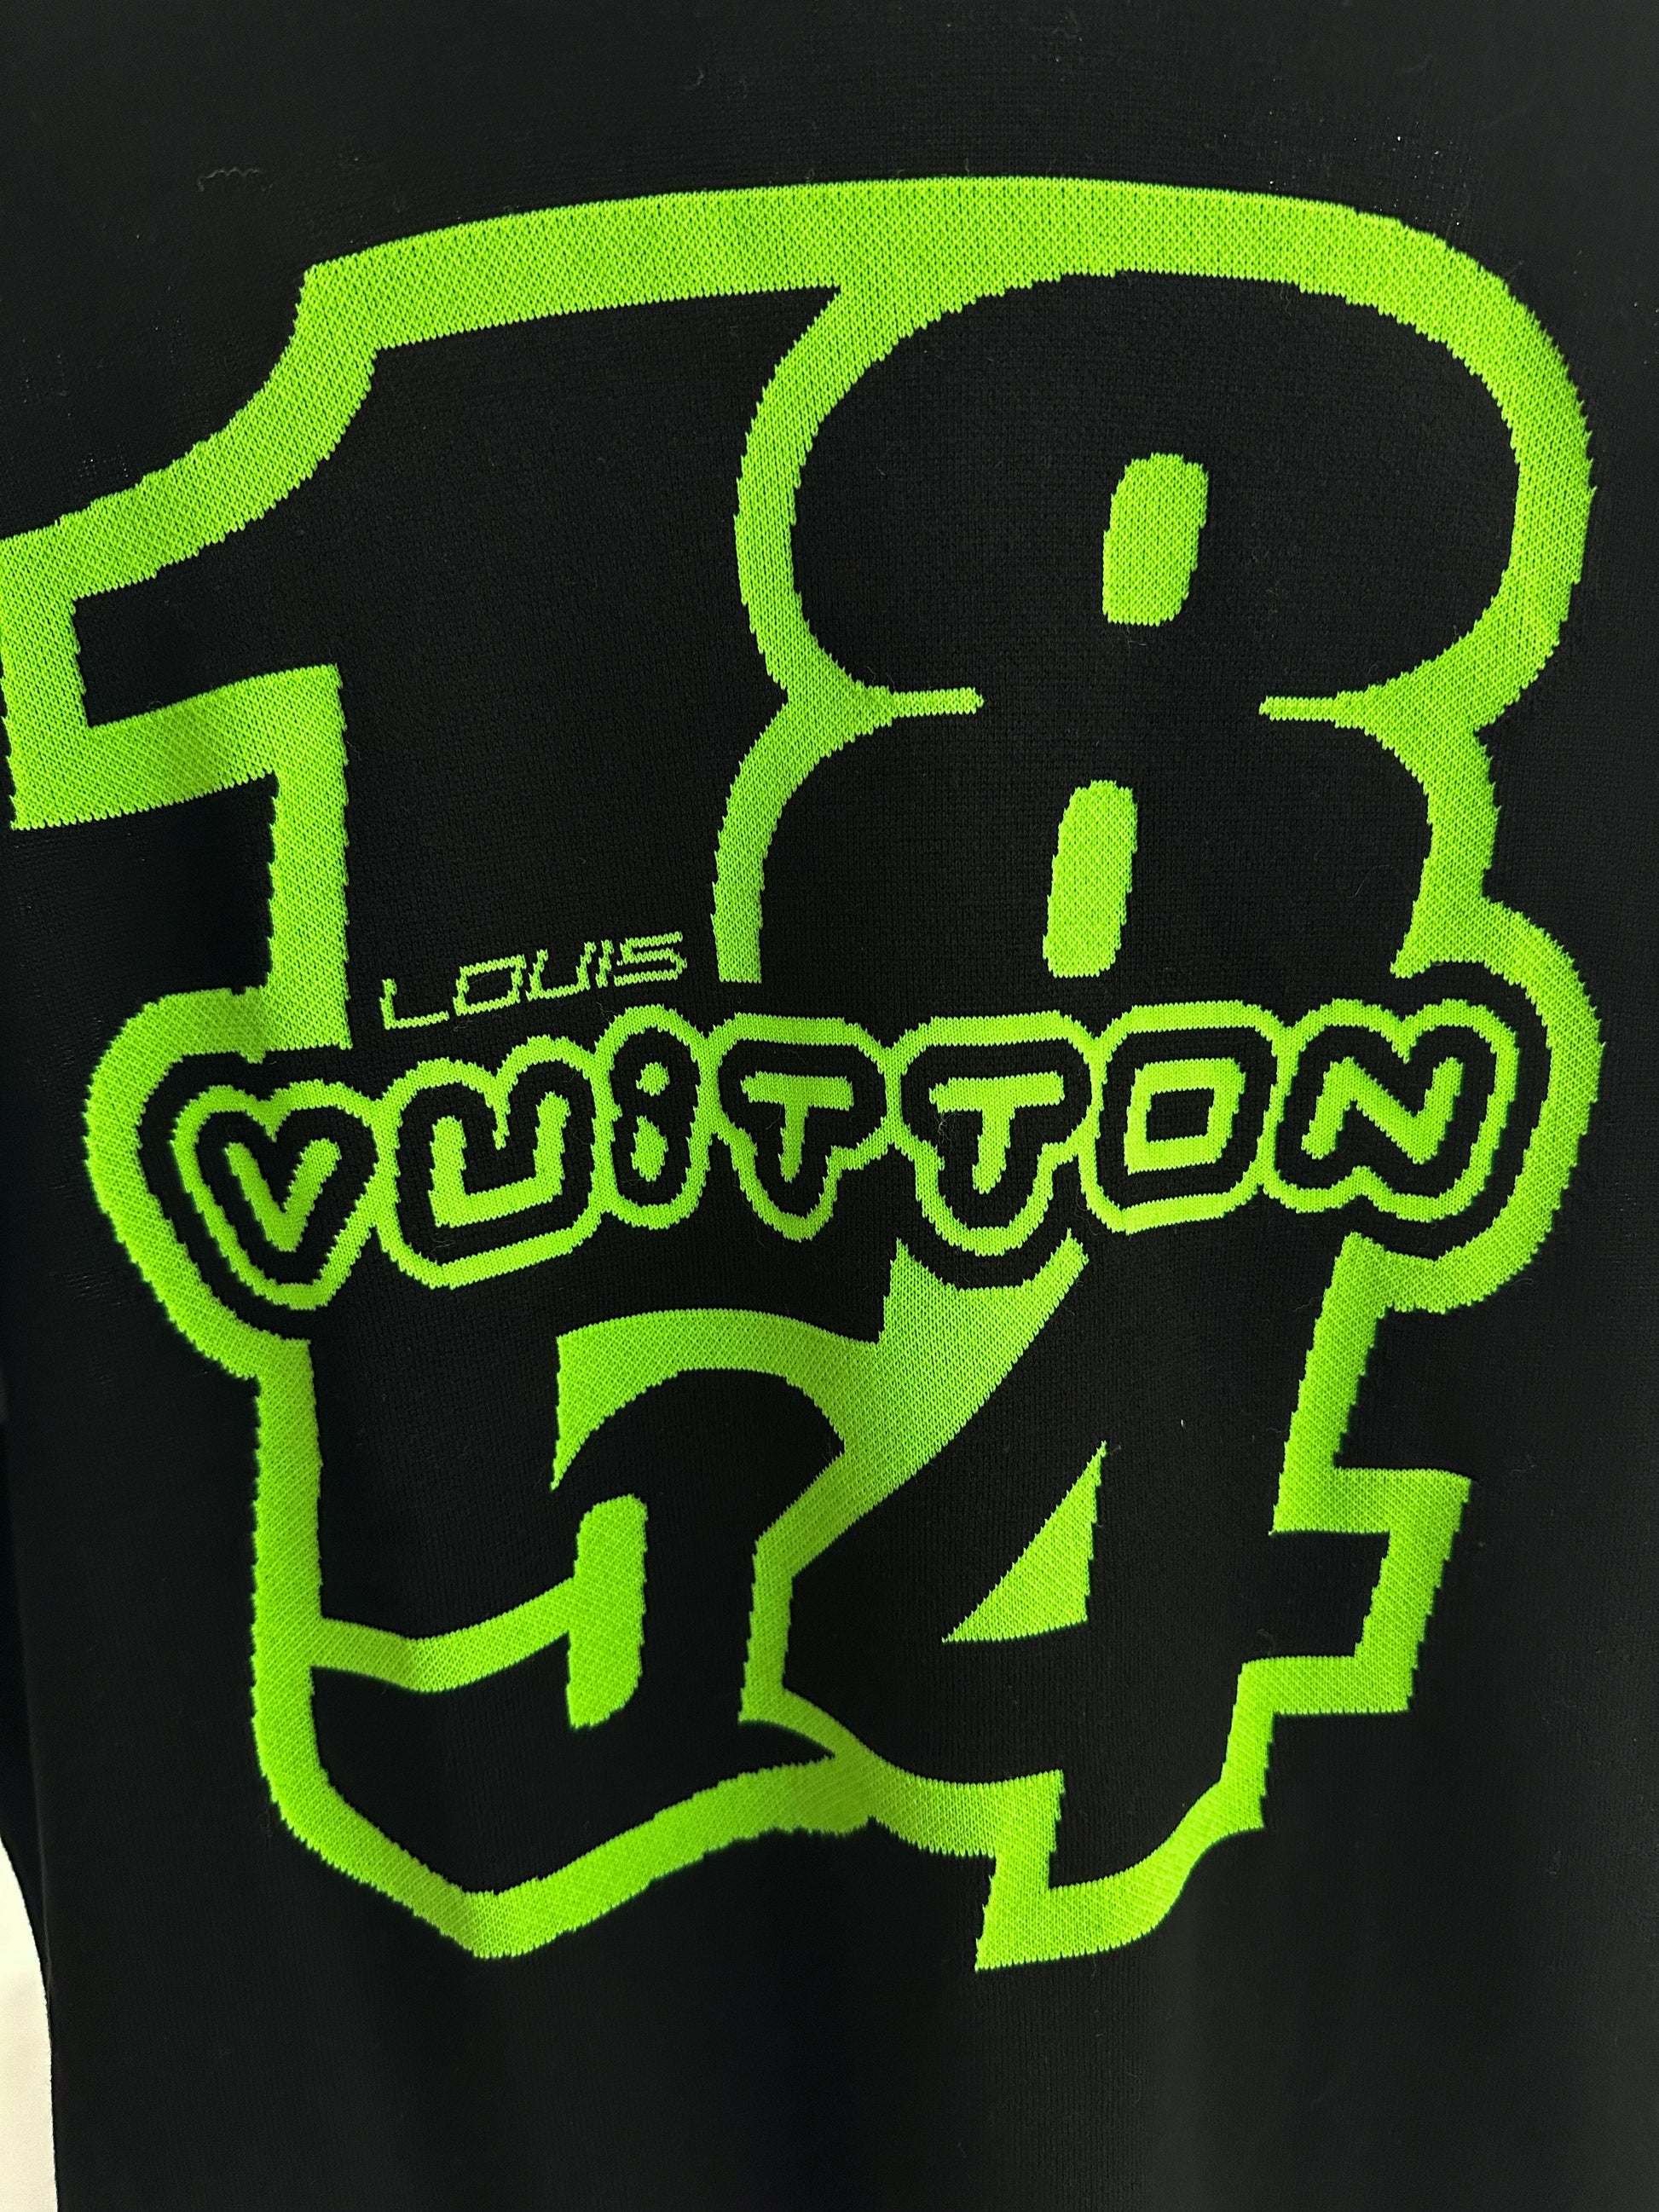 LV 1854 Graphic Knit T-Shirt, Louis Vuitton